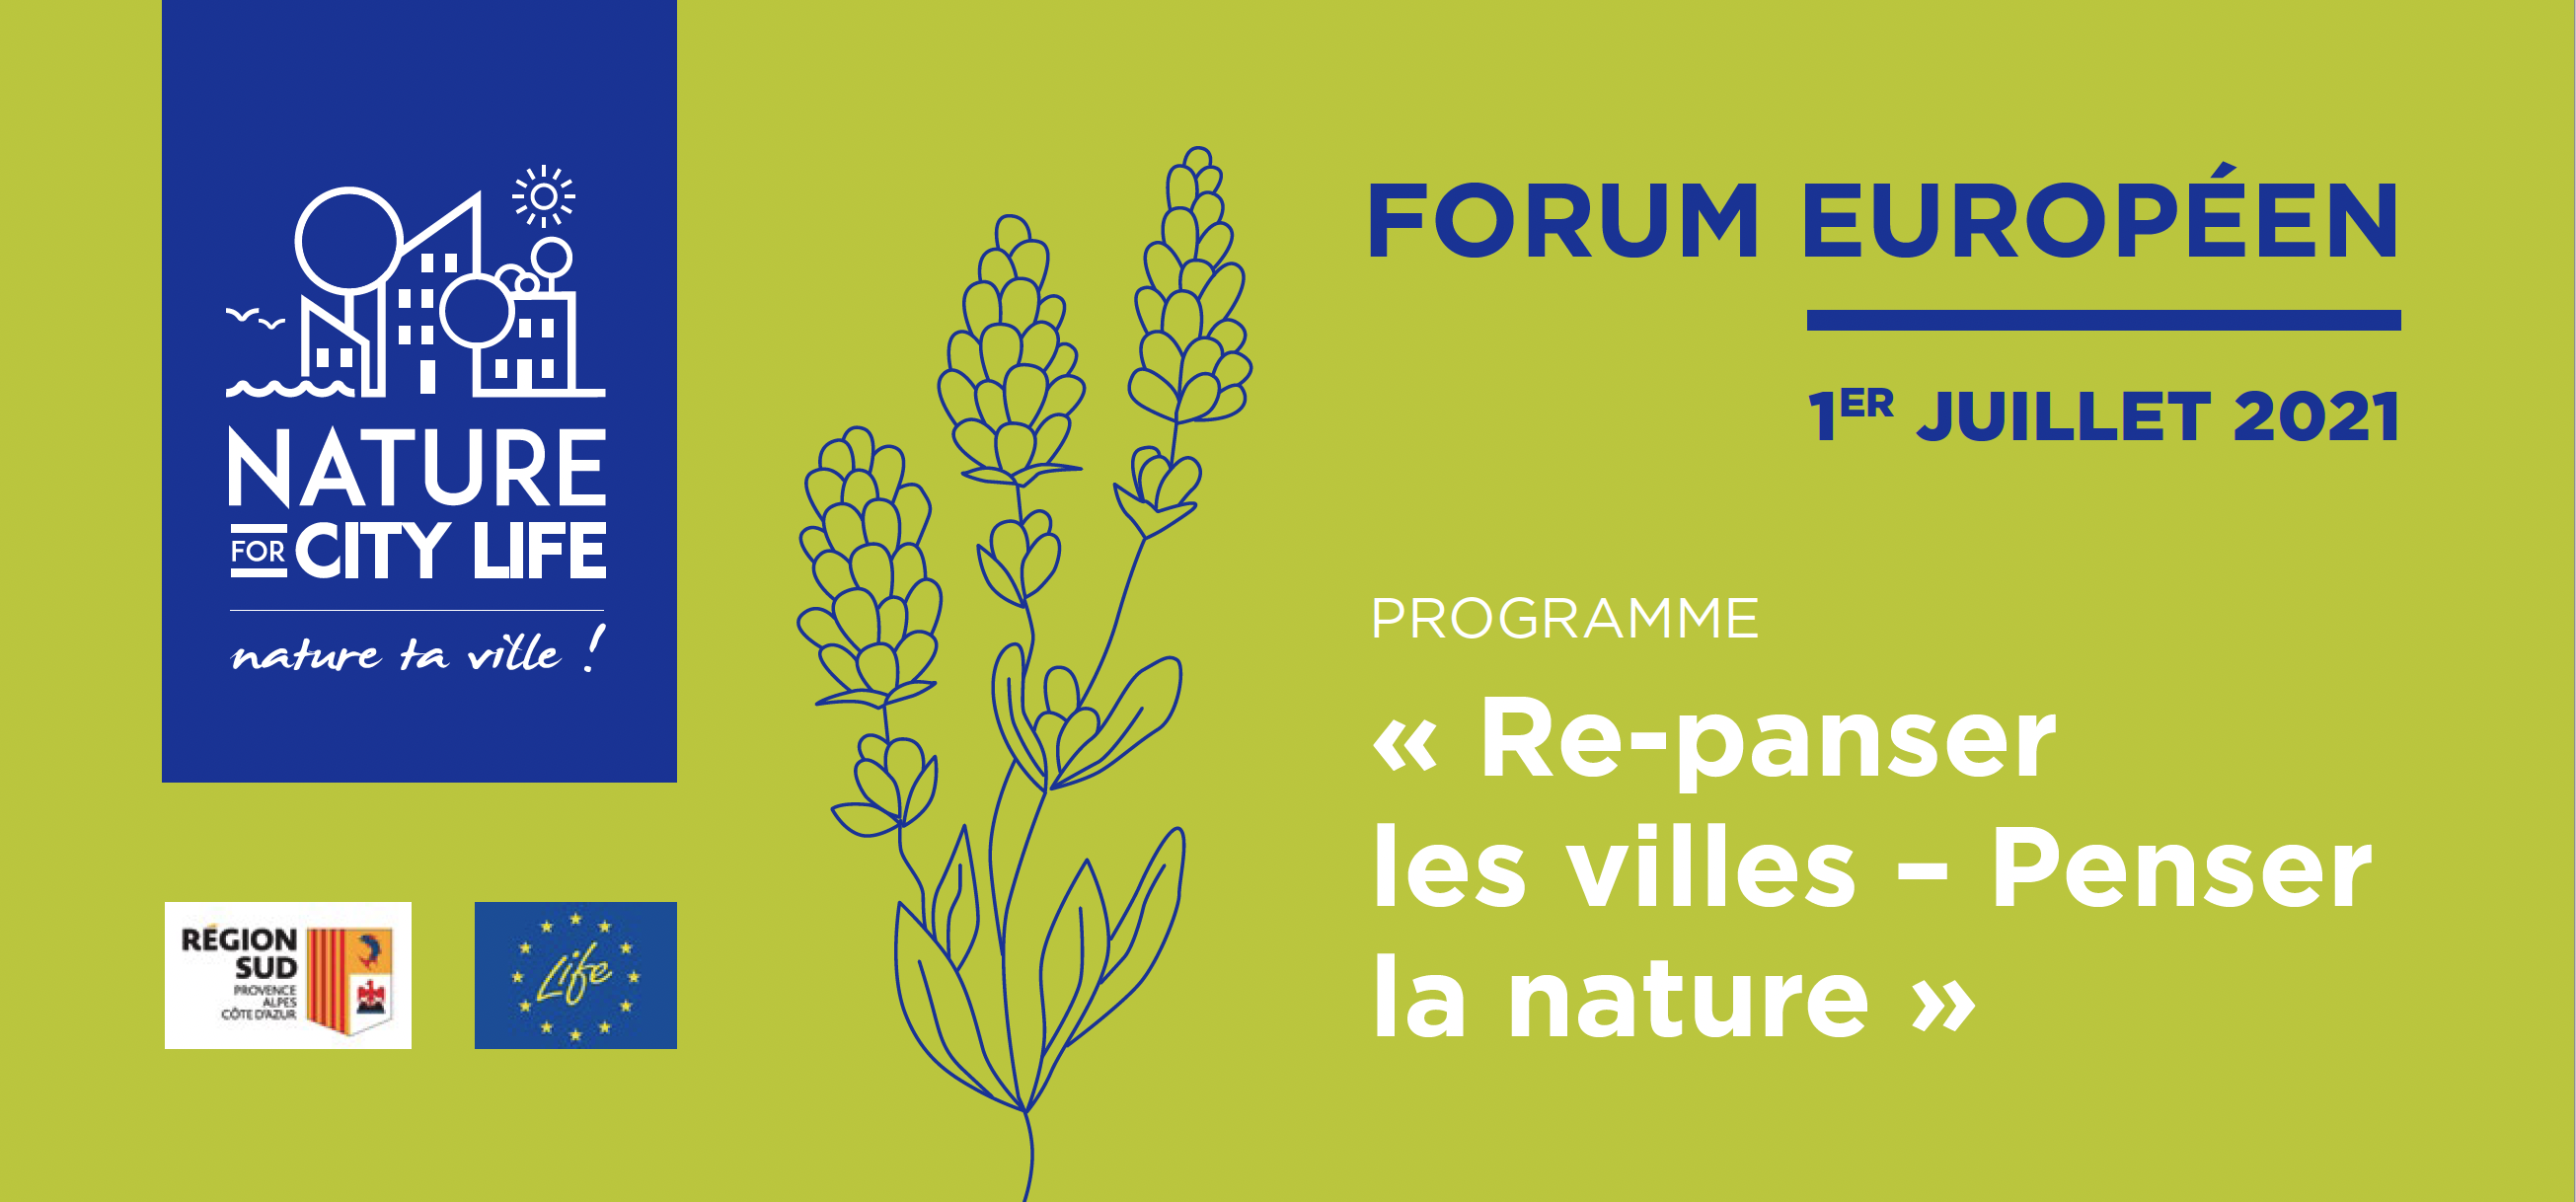 Forum Européen, Nature For City LIFE « Re-panser les villes – Penser la nature »